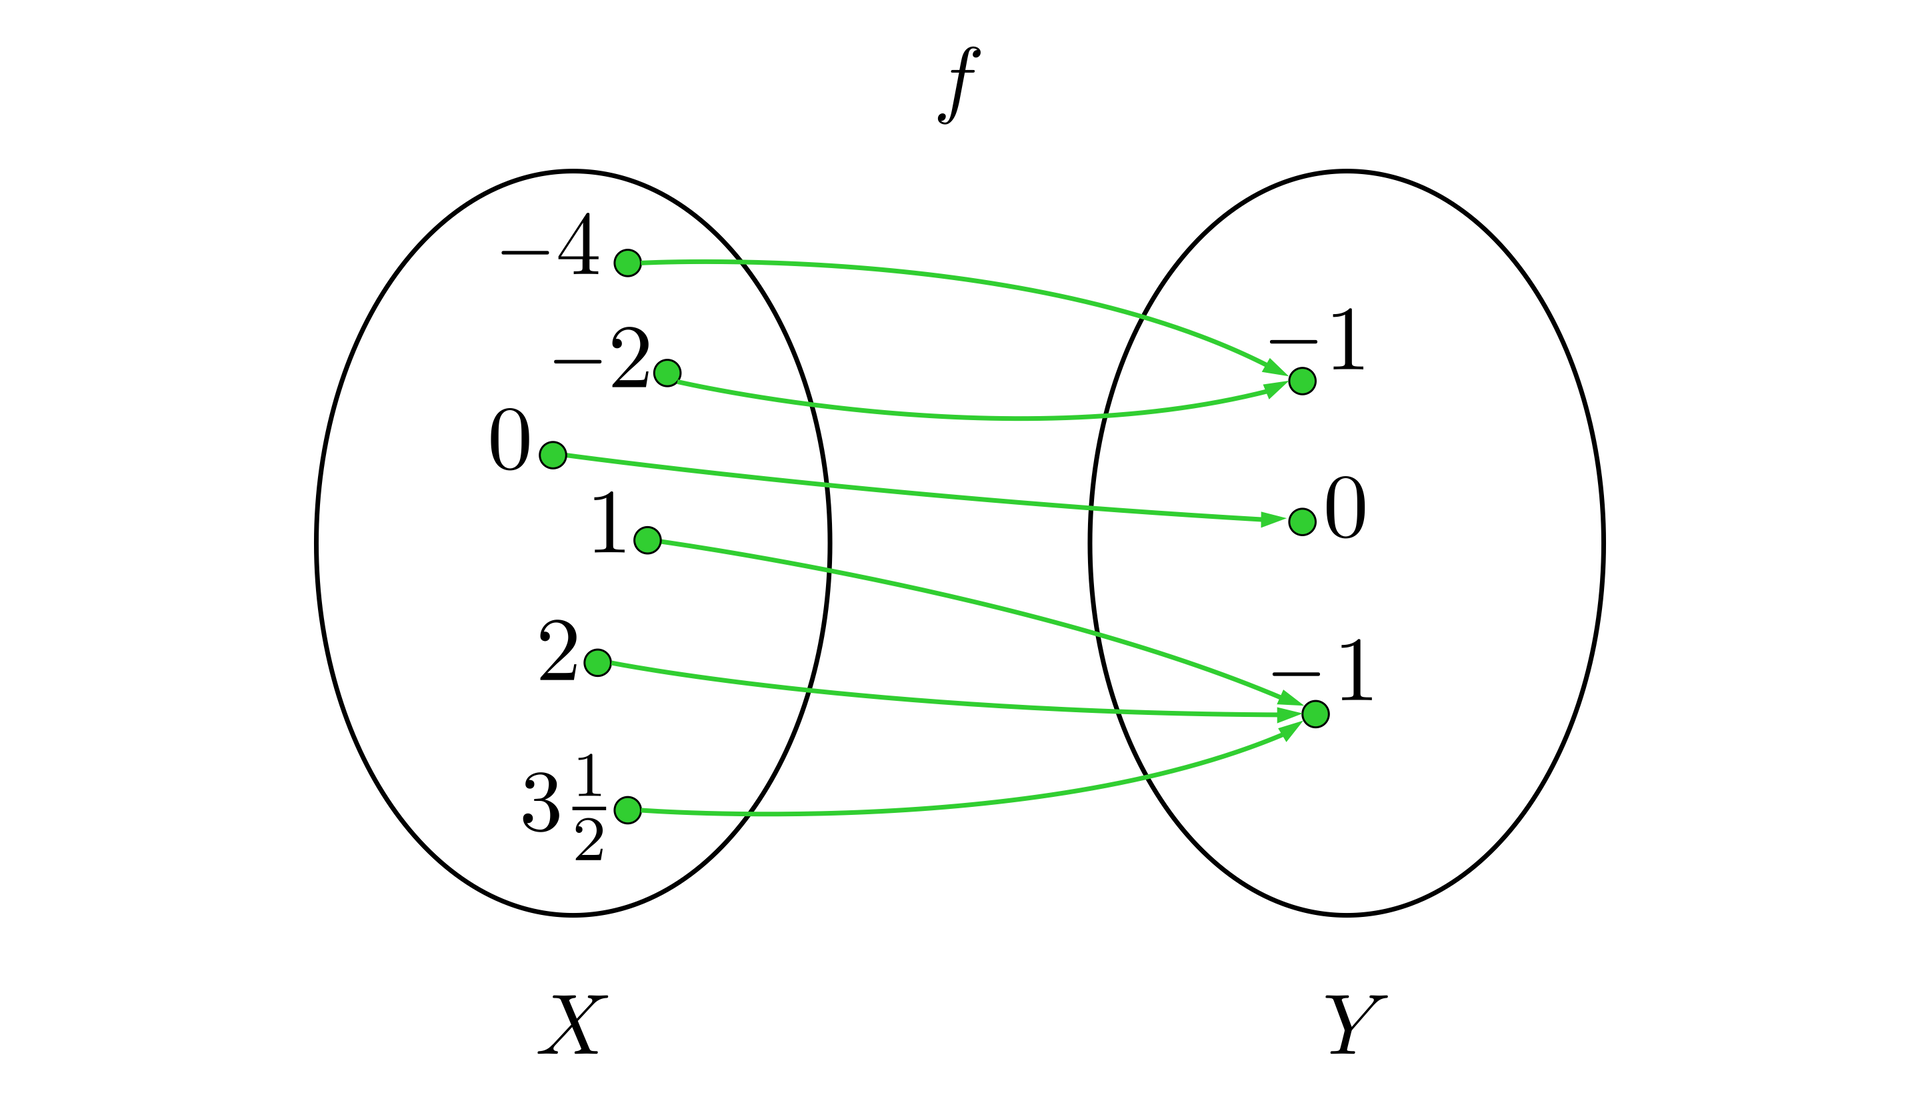 Ilustracja przedstawia funkcje f opisaną za pomocą grafu. Zbiór x zawiera liczby: minus 4, minus 2, 0, 1, 2, 312. Zbiór y zawiera liczby: minus 1, 0, minus 1; Liczby z obu zborów są połączone w następujący sposób: minus 4 z minus 1, minus 2 z minus 1, 0 z 0, 1 z minus 1, 2 z minus 1 i  312 z minus .